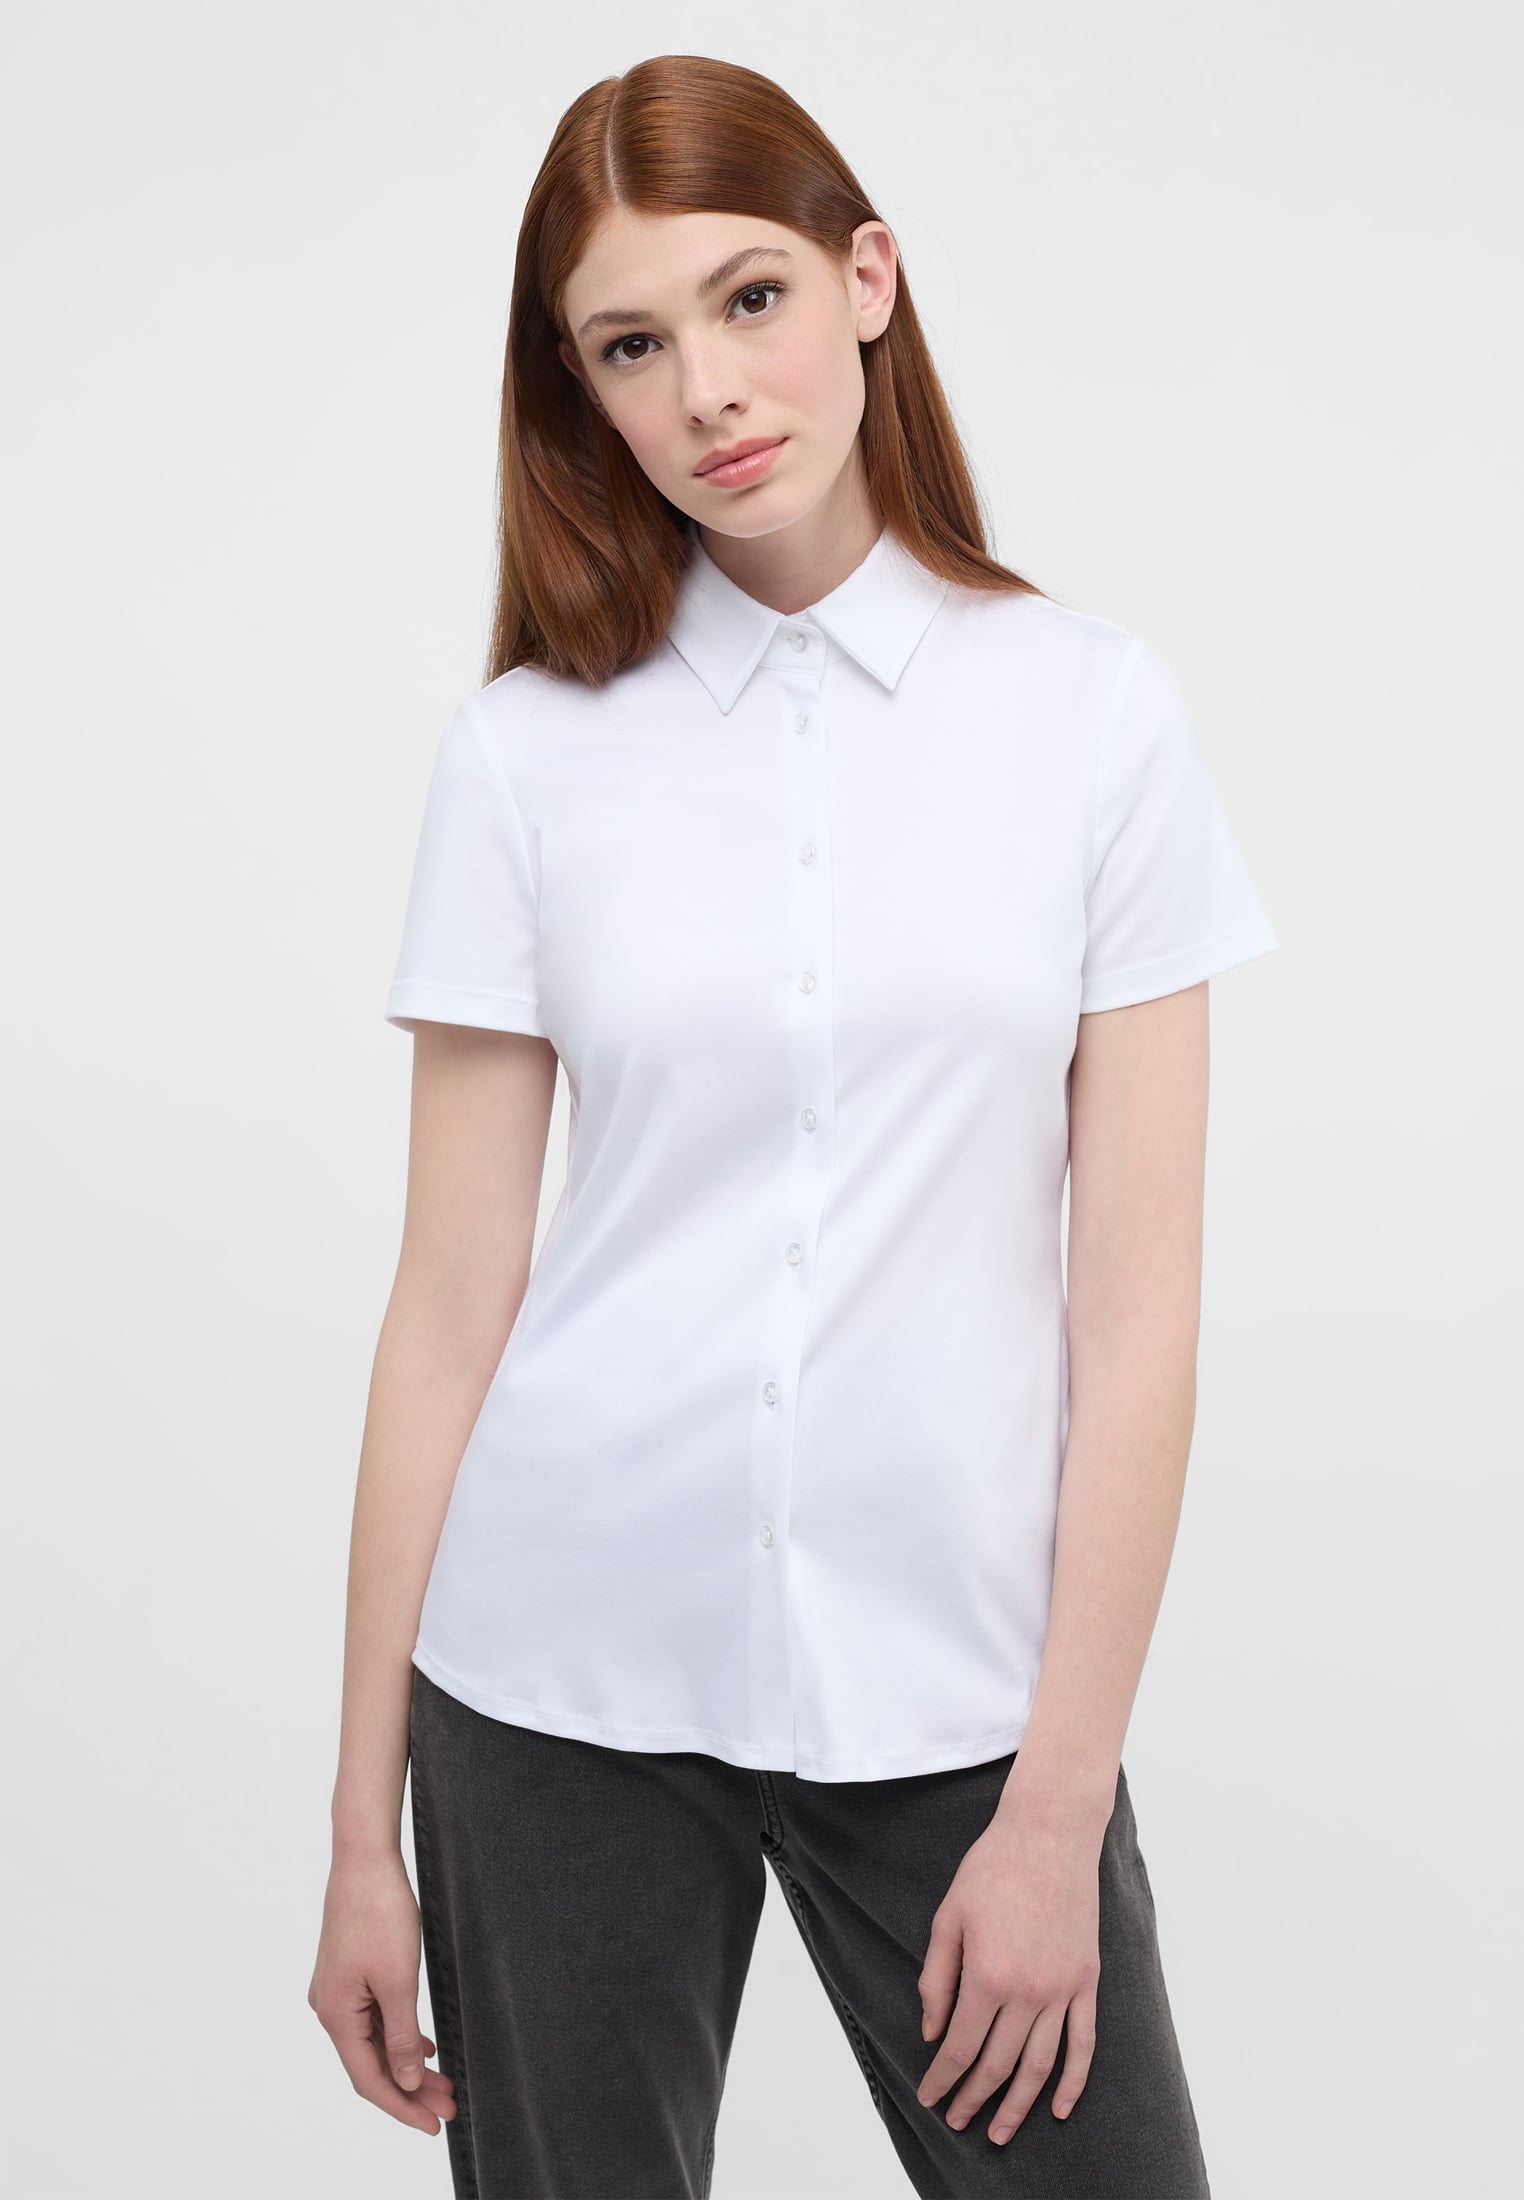 2BL04293-00-01-44-1/2 in 44 plain | white Blouse | white sleeve Jersey short Shirt | |